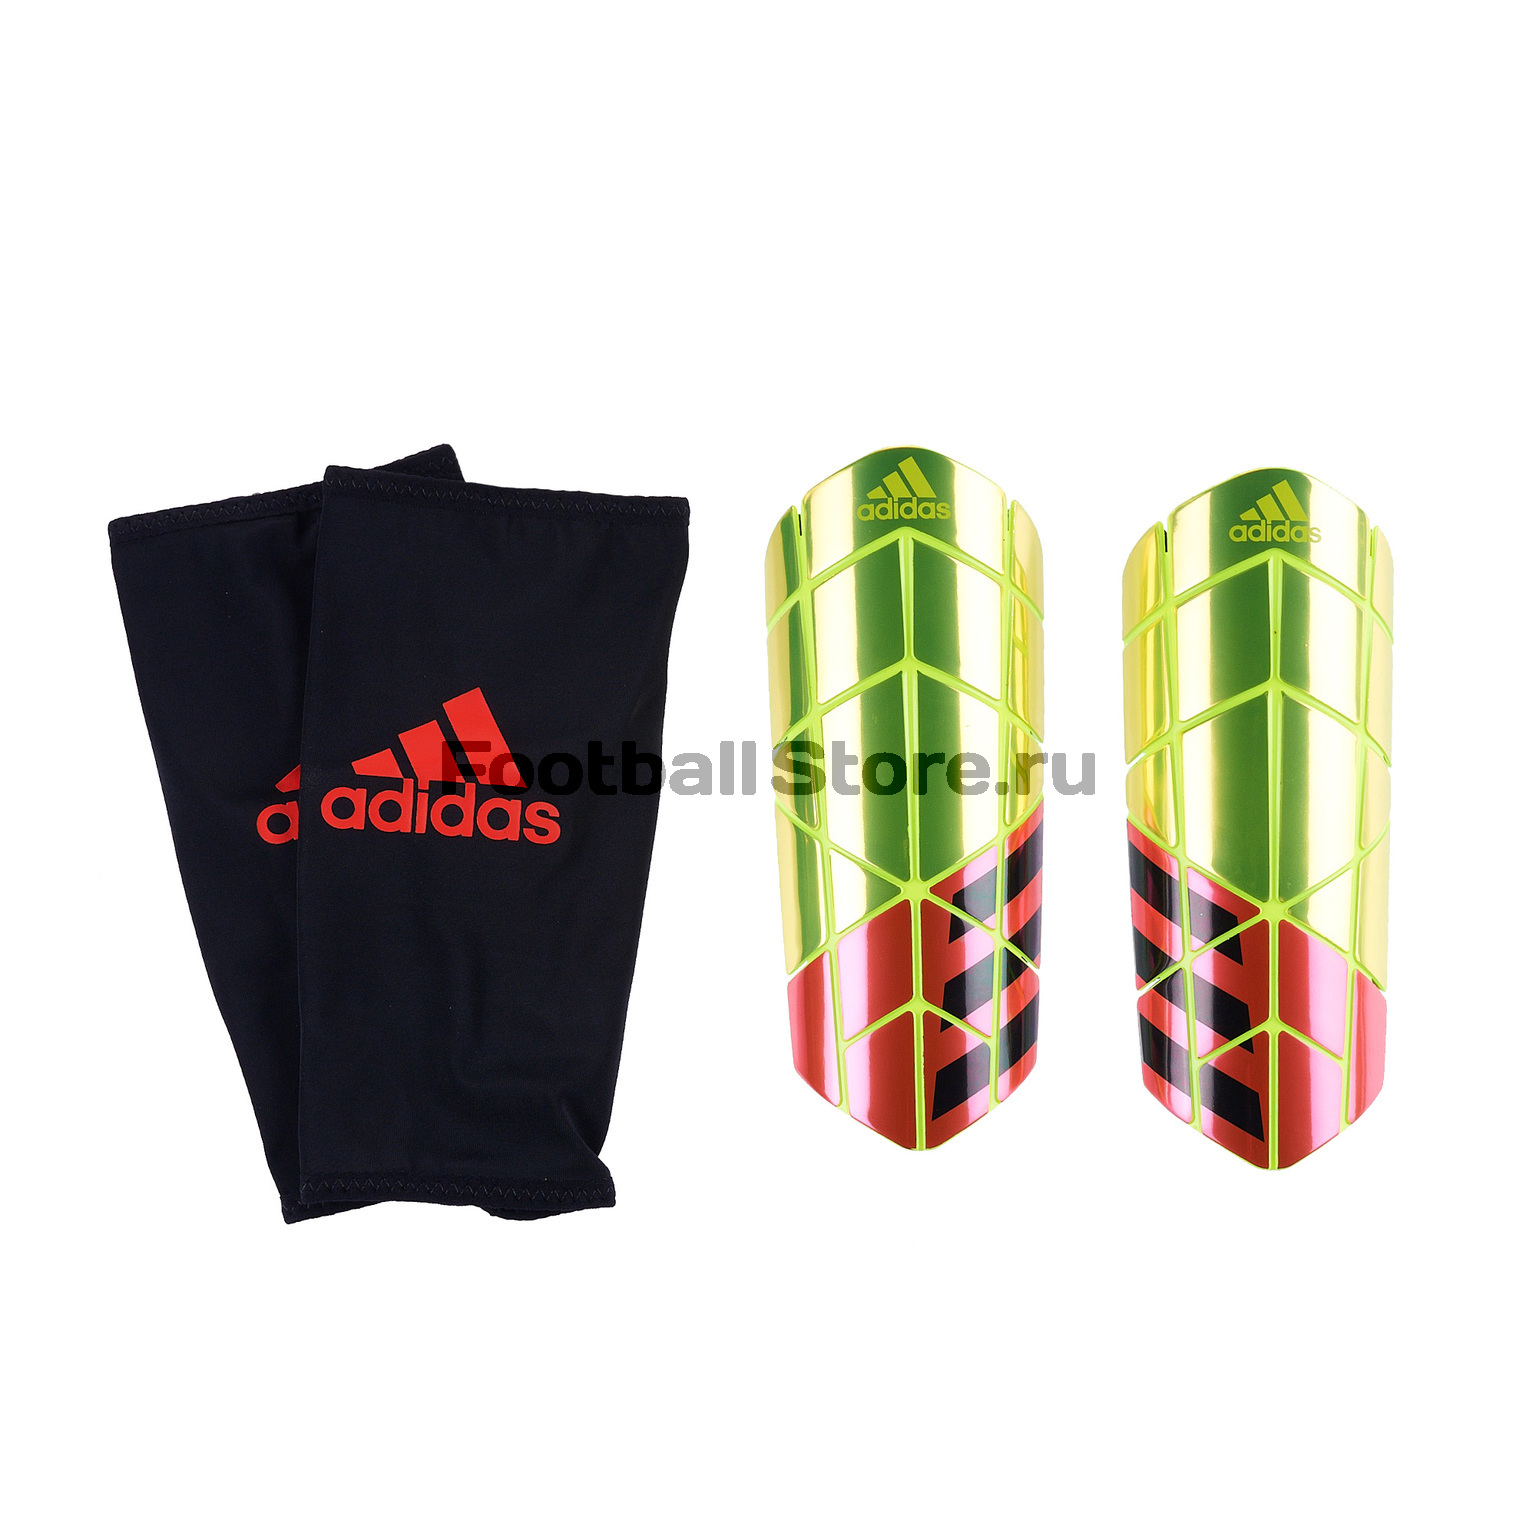 Щитки Adidas X Pro CW9709 – купить в магазине footballstore, цена, фото